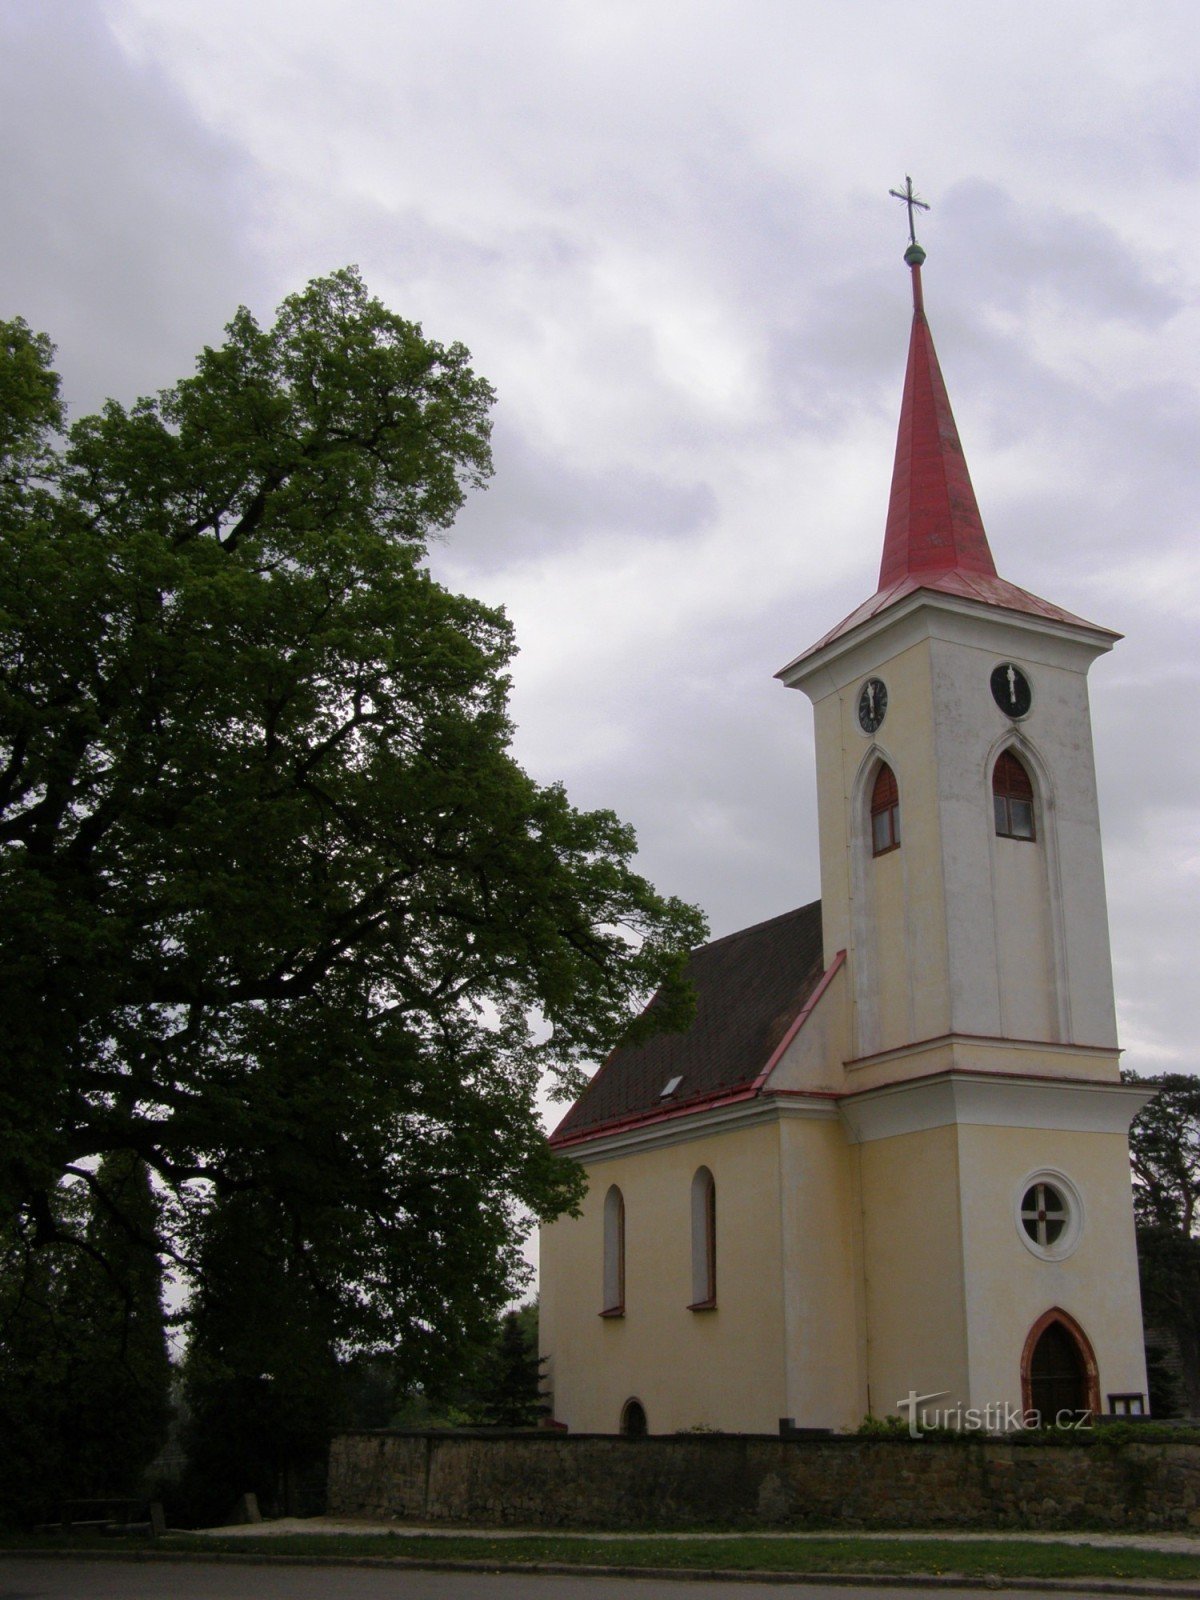 Velichovky - Nhà thờ Chúa biến hình